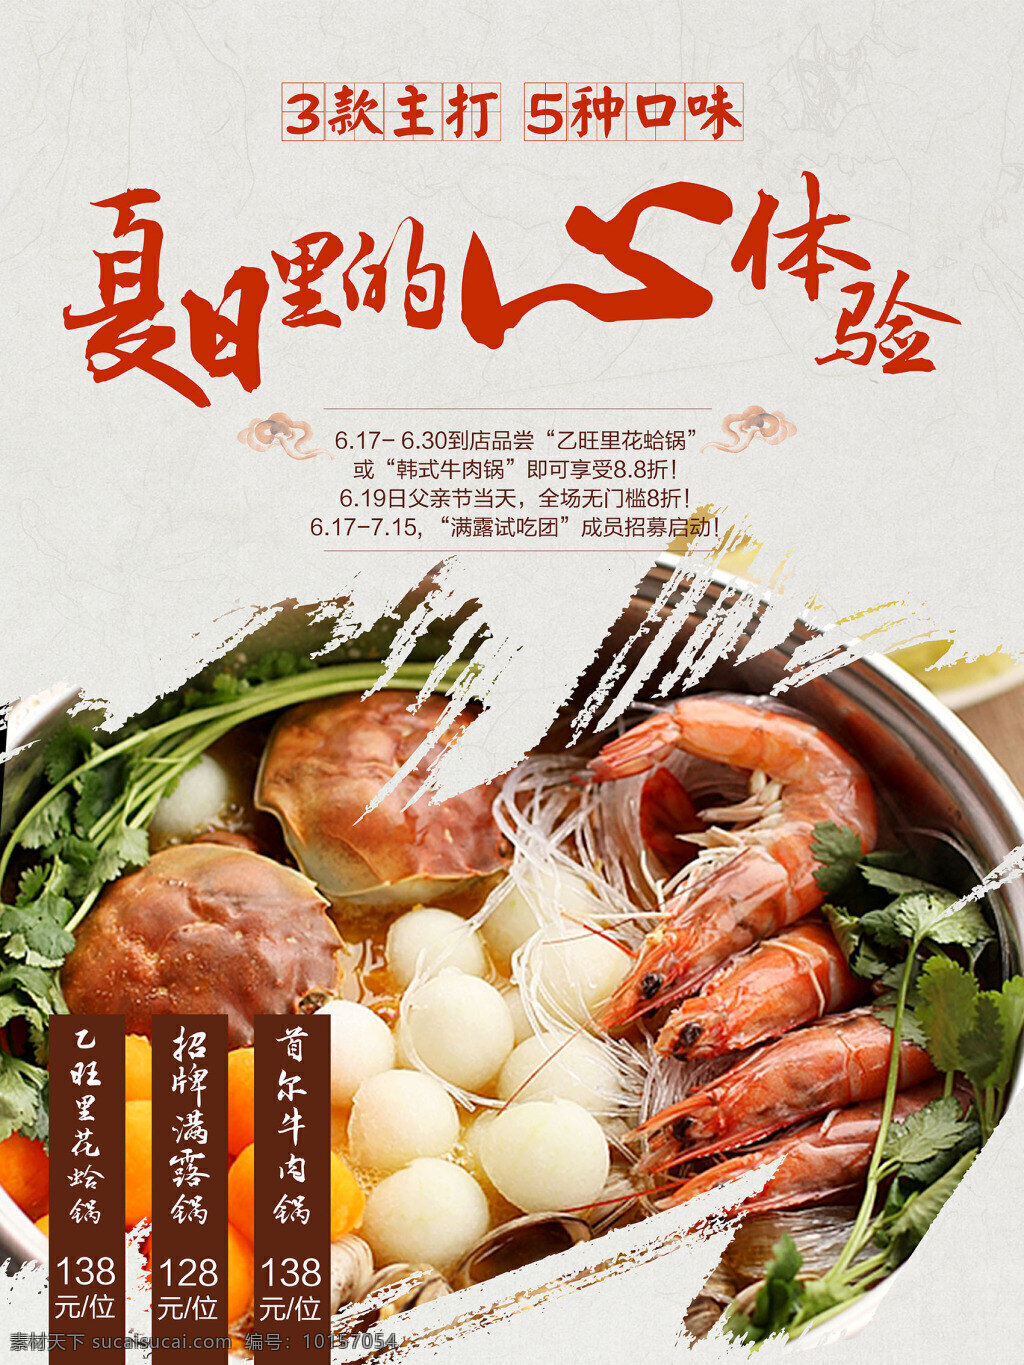 美食 海报 饮食 招贴 火锅 促销 宣传 夏日 体验 模板